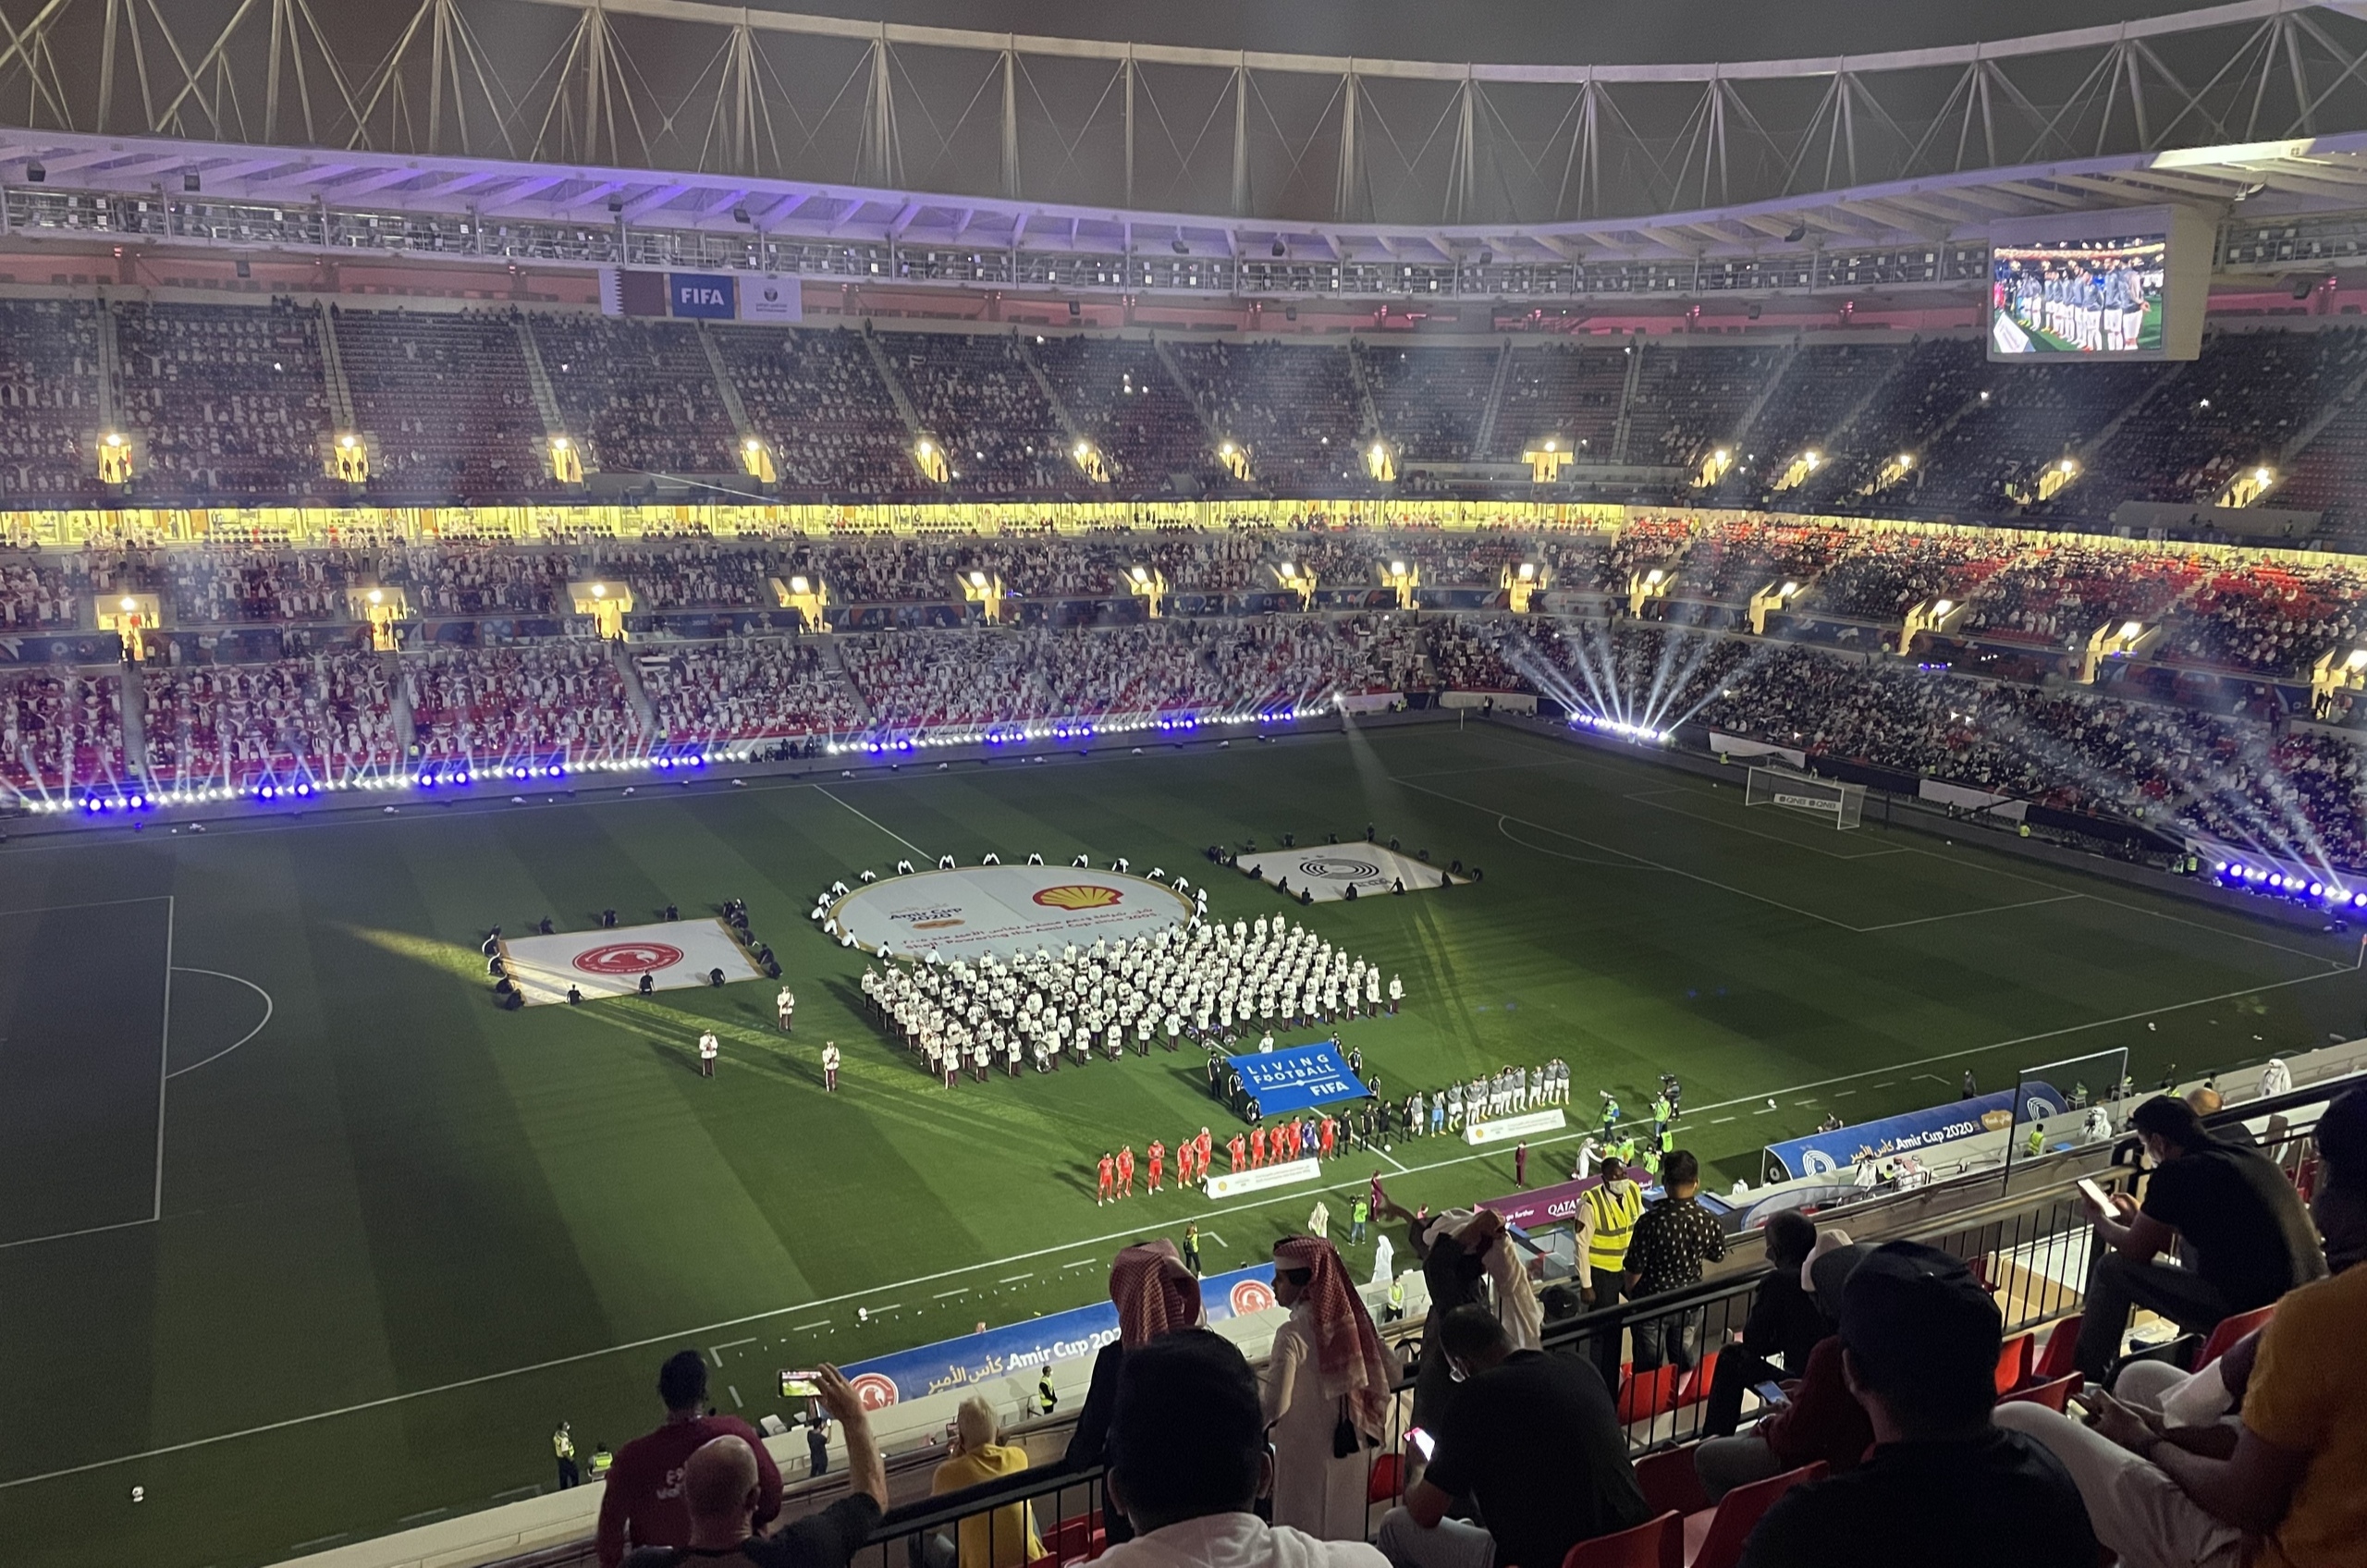 Хави, стадионы, ЧМ-2018 FIFA, Футбольная ассоциация Катара